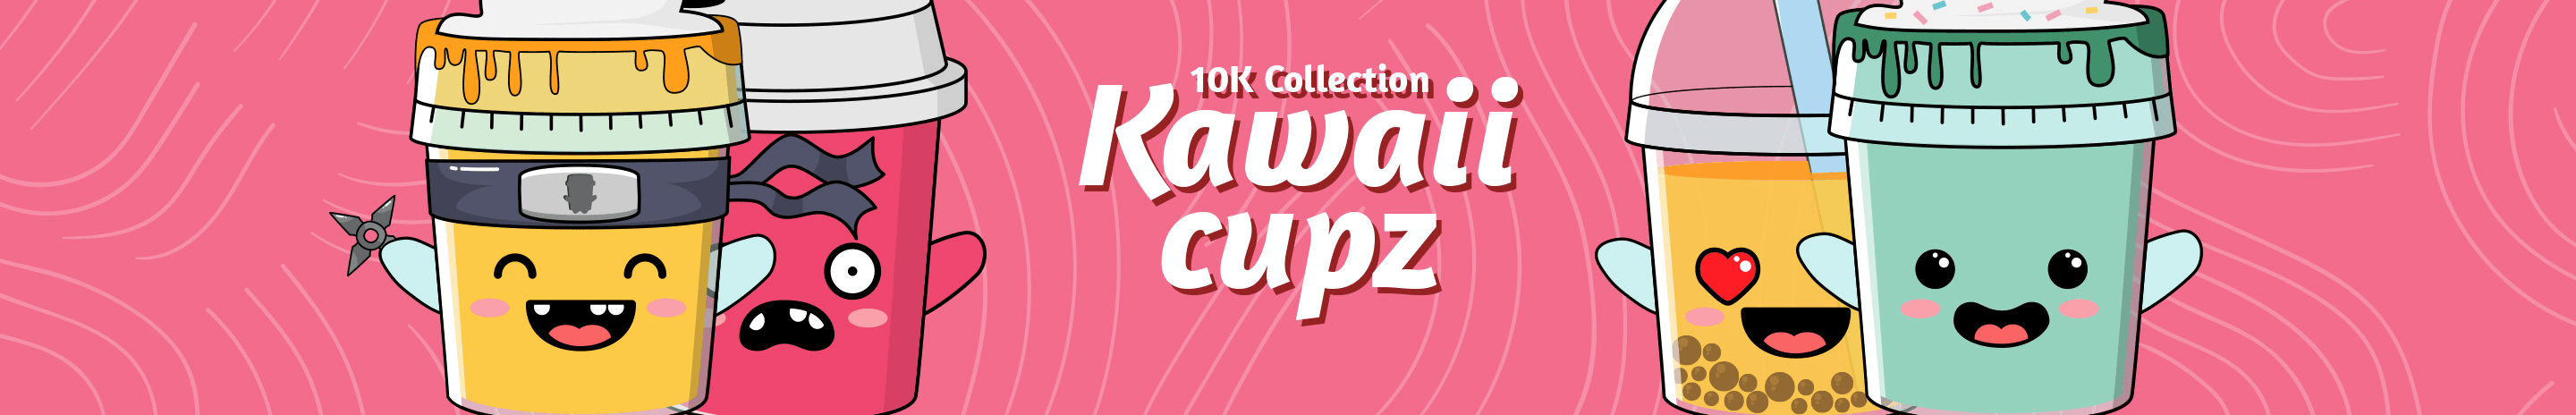 Kawaii Cupz